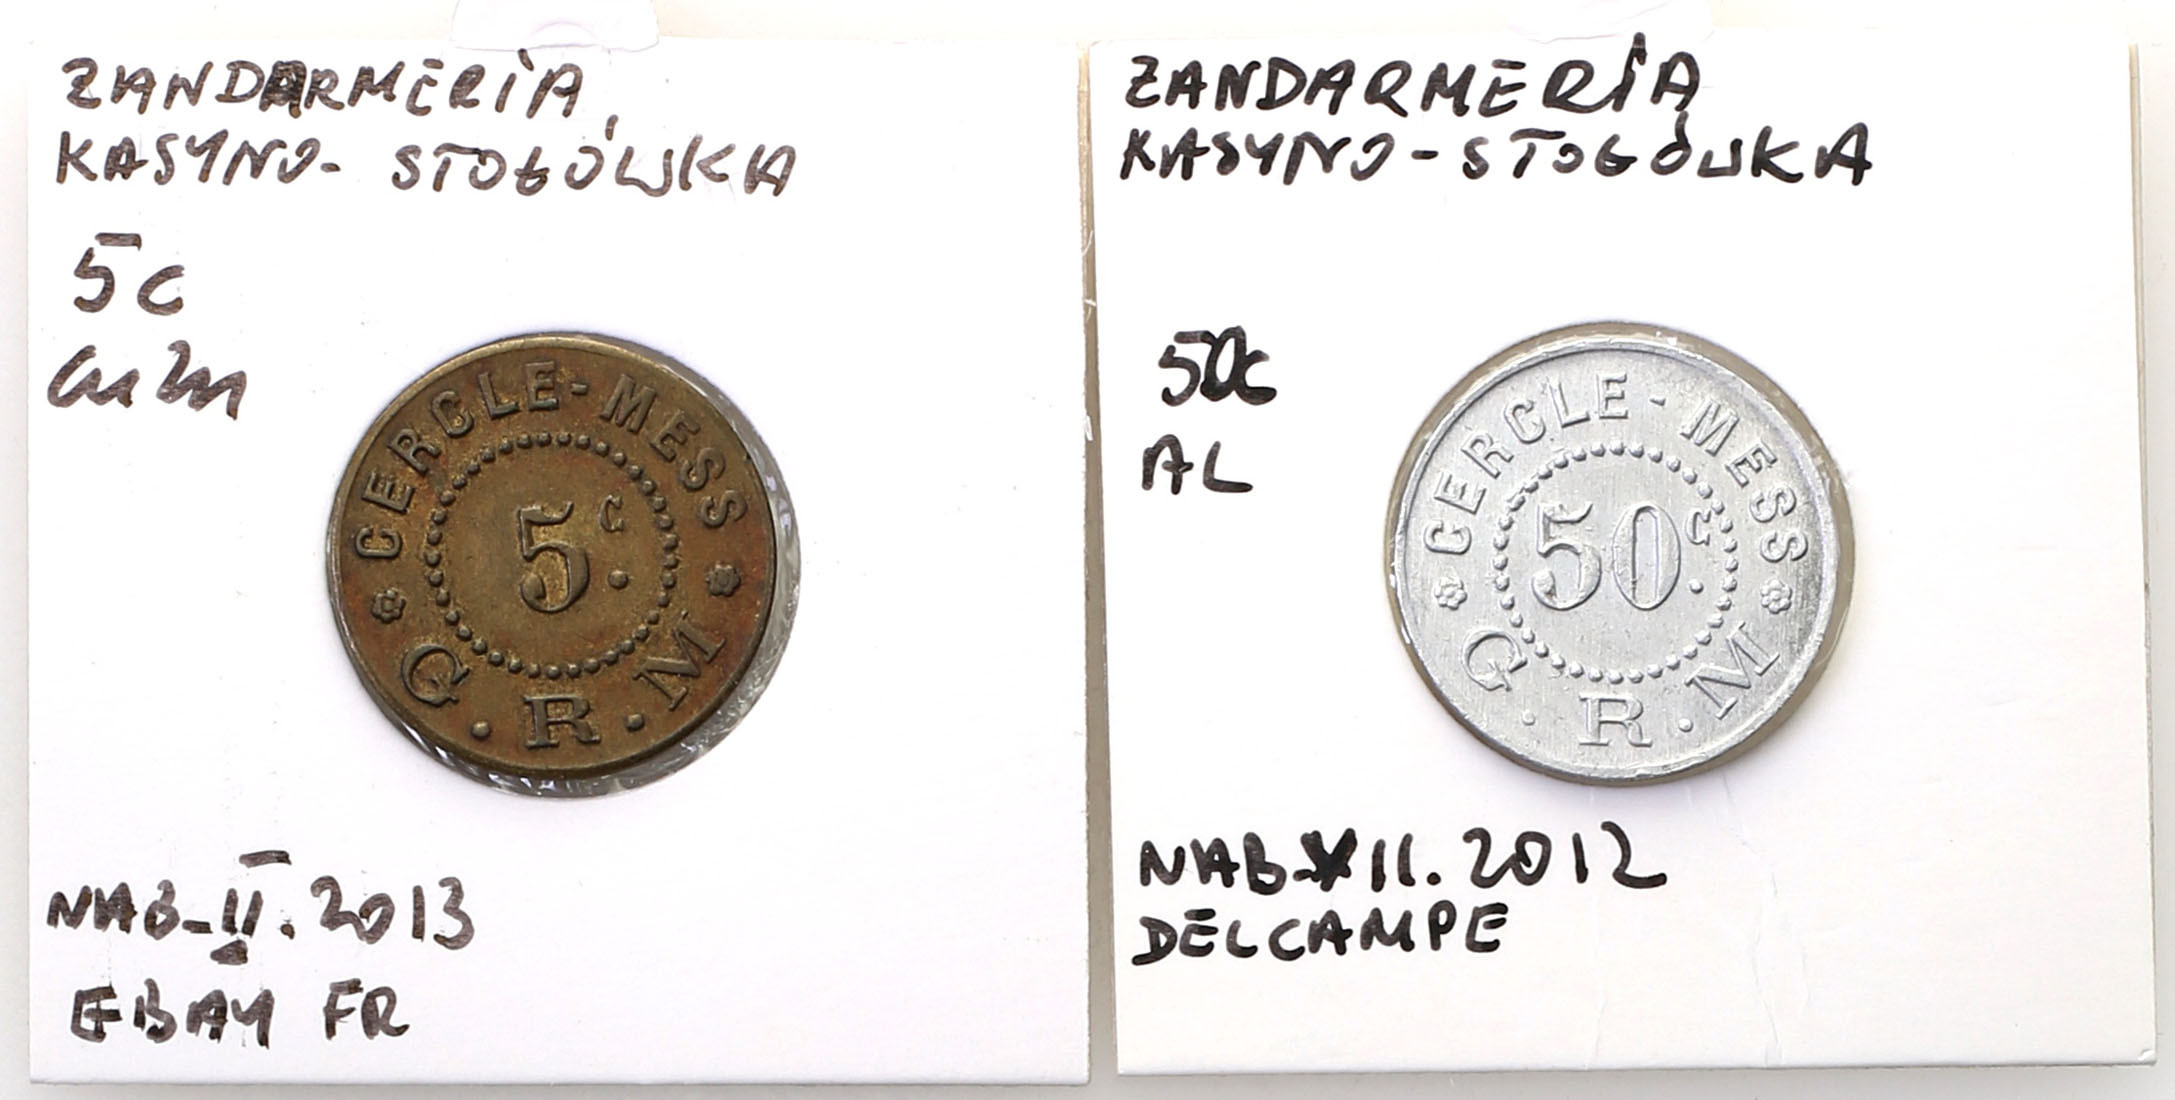 Francja. 5 centów Żandarmeria Wojskowa Kasyno – Stołówka, zestaw 2 monet